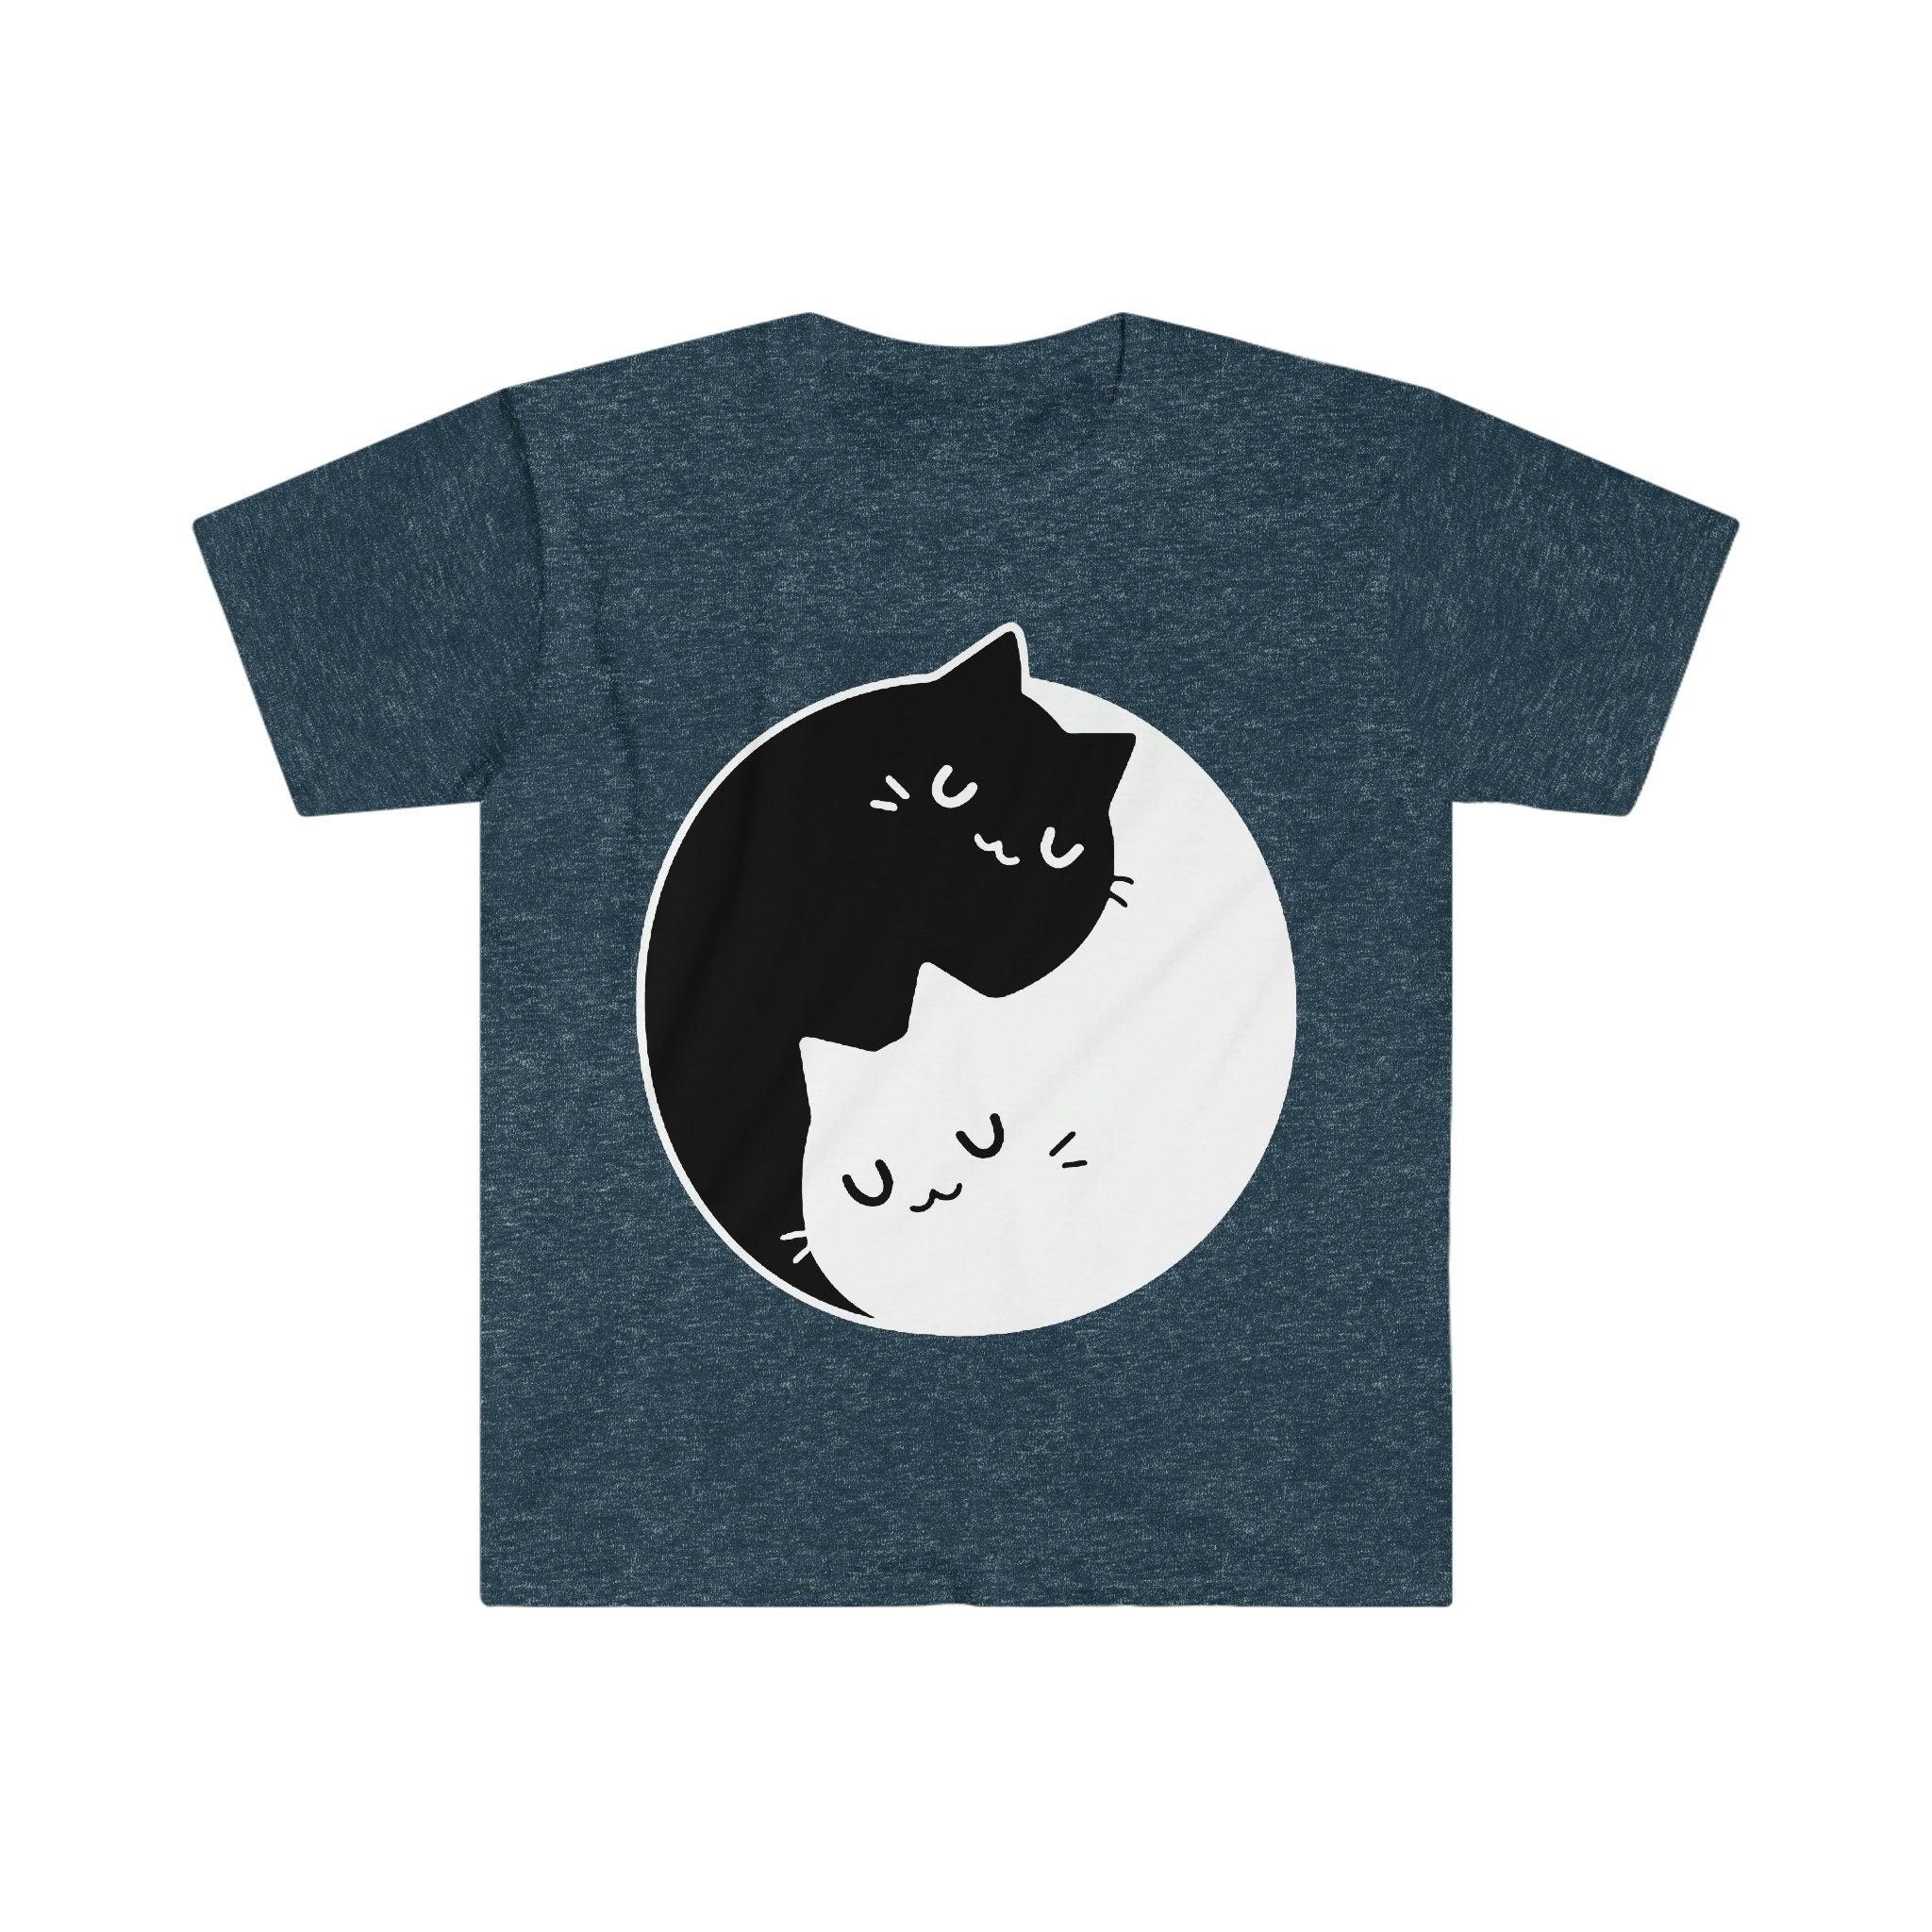 음양 고양이 티셔츠 , 음양 이중성 || 음양 고양이 || 완벽한 선물 - SML Xl - 여성, 남성 남녀공용 || Bff 커플 선물 아이디어, Cat Mom 티셔츠, 티셔츠 - plusminusco.com